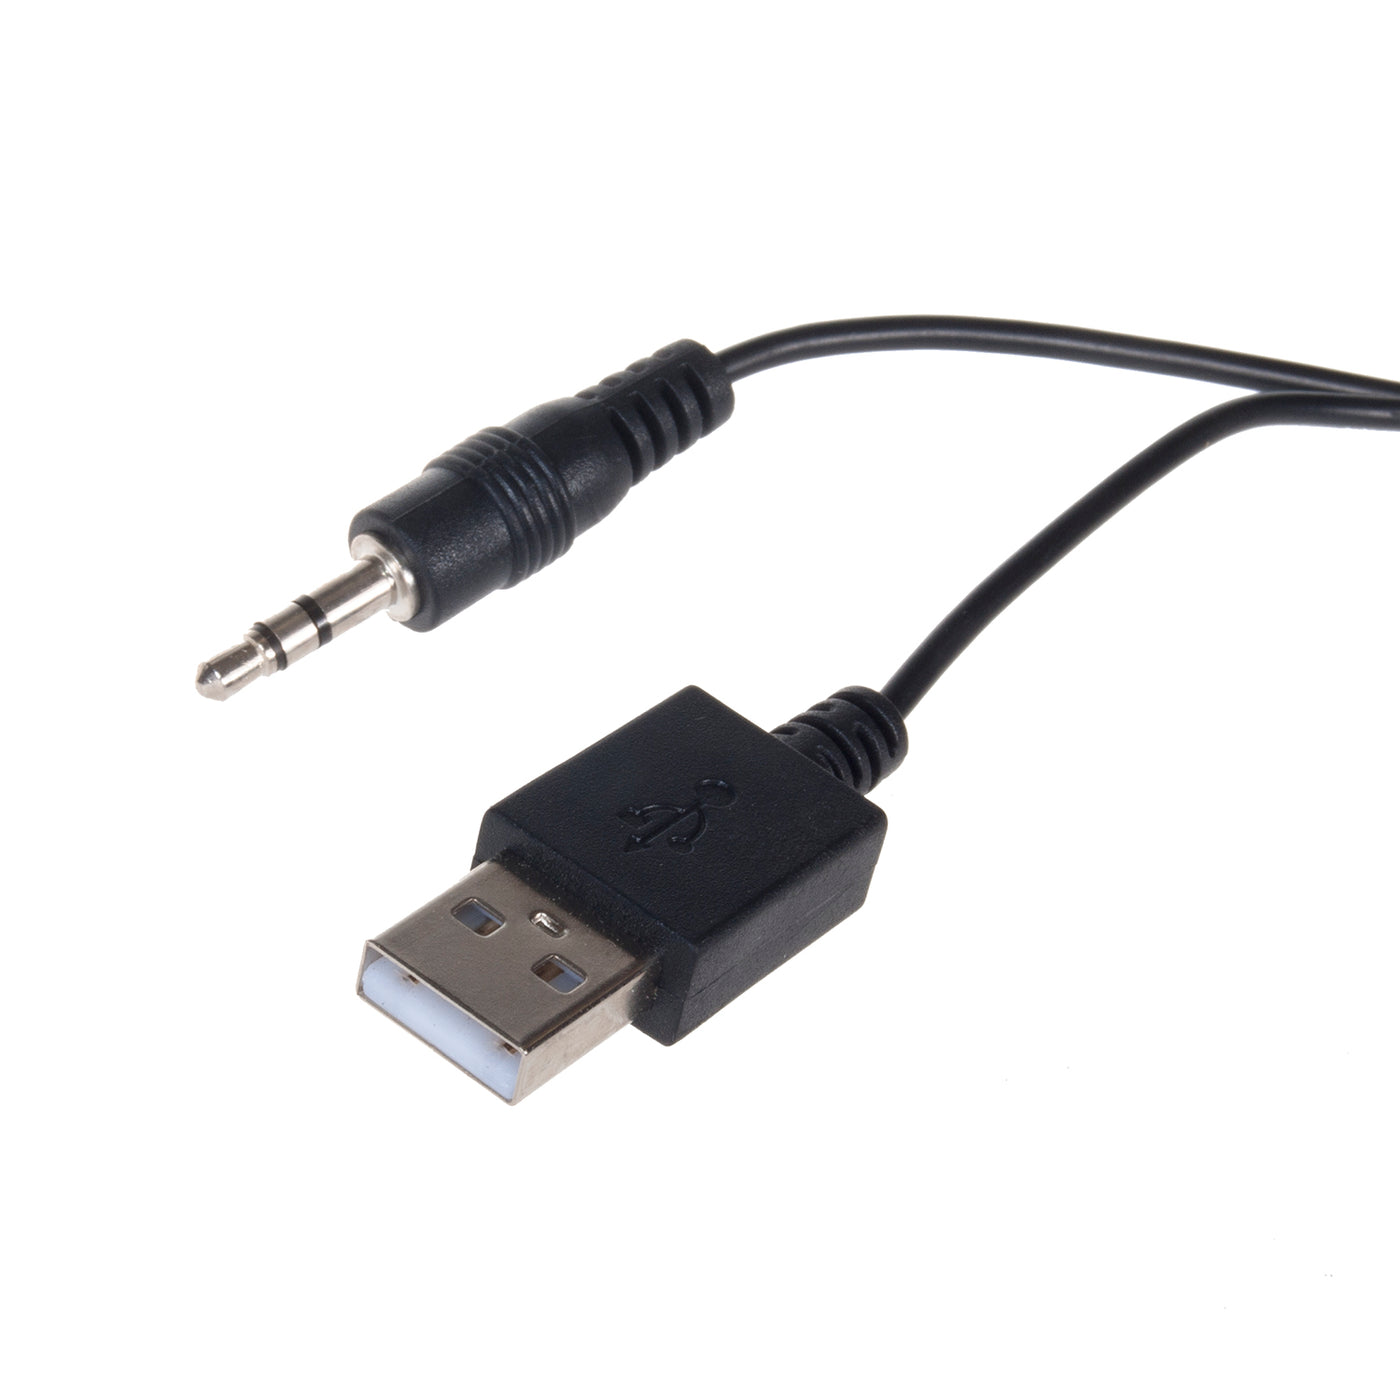 Głośniki komputerowe bluetooth 5.0, 3.5mm mini jack, USB 5v Audiocore AC845 czarne moc 6W - sterowanie dotykowe